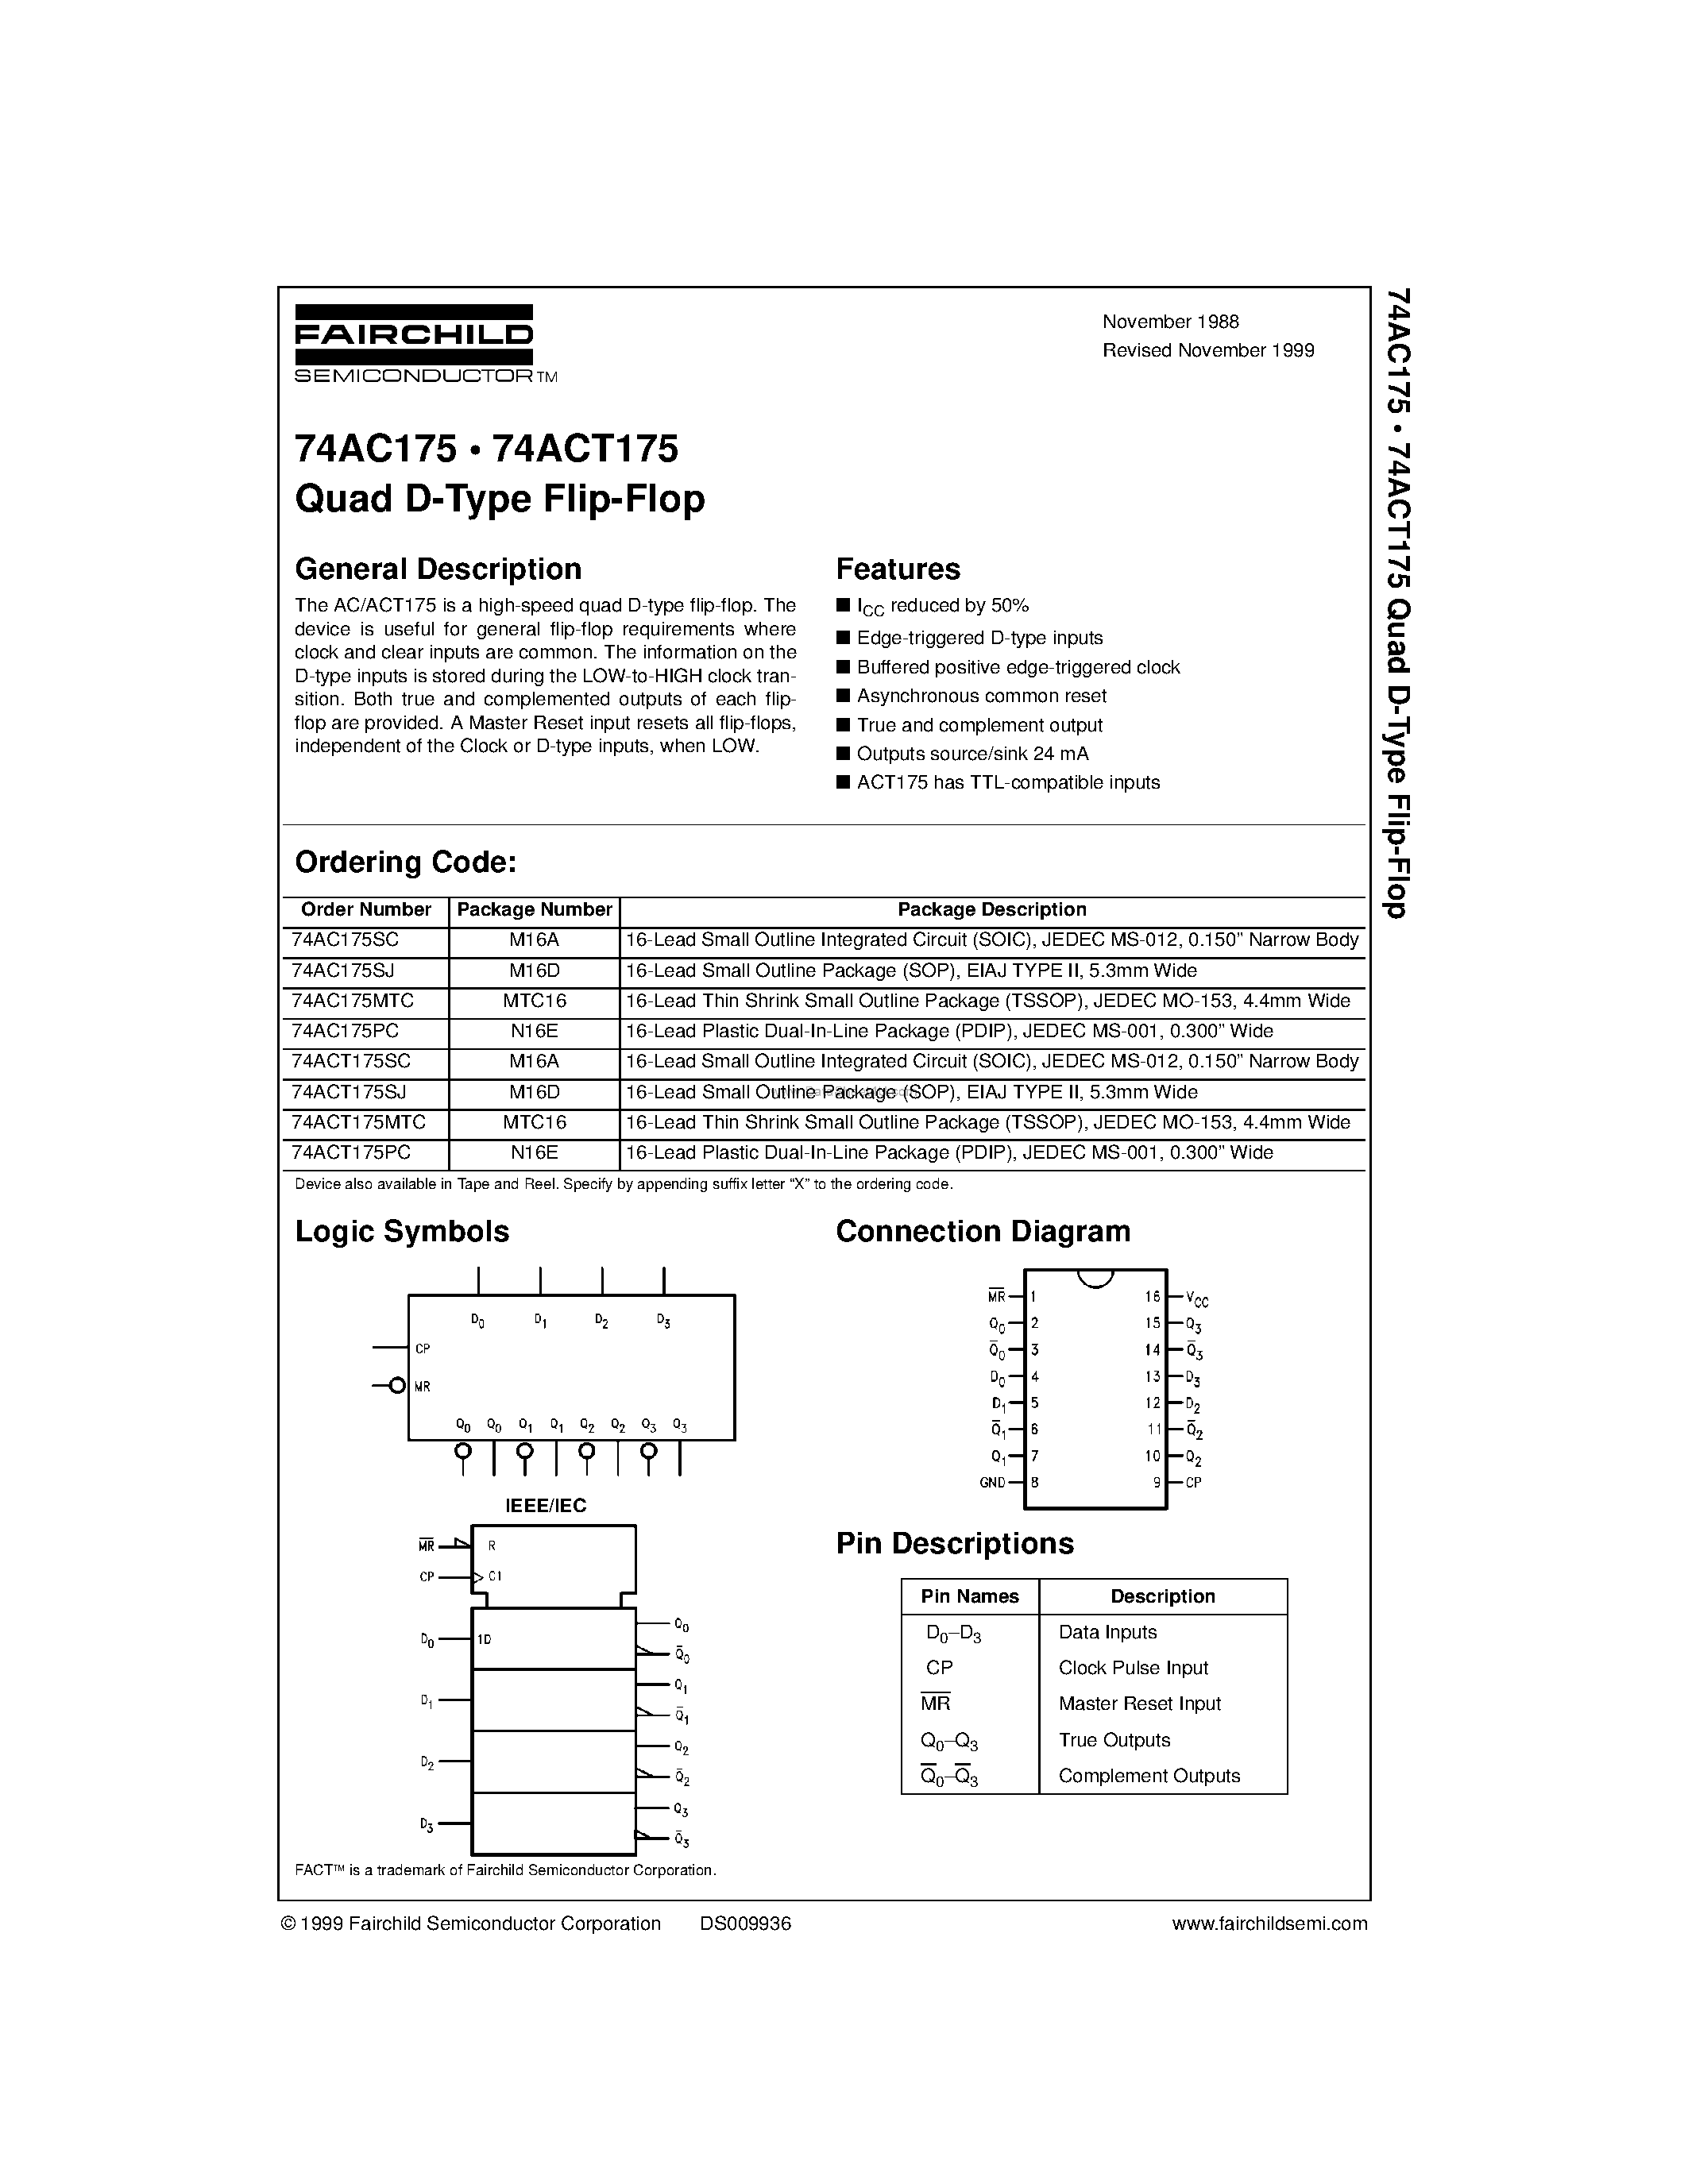 Datasheet 74AC175PC - Quad D-Type Flip-Flop page 1